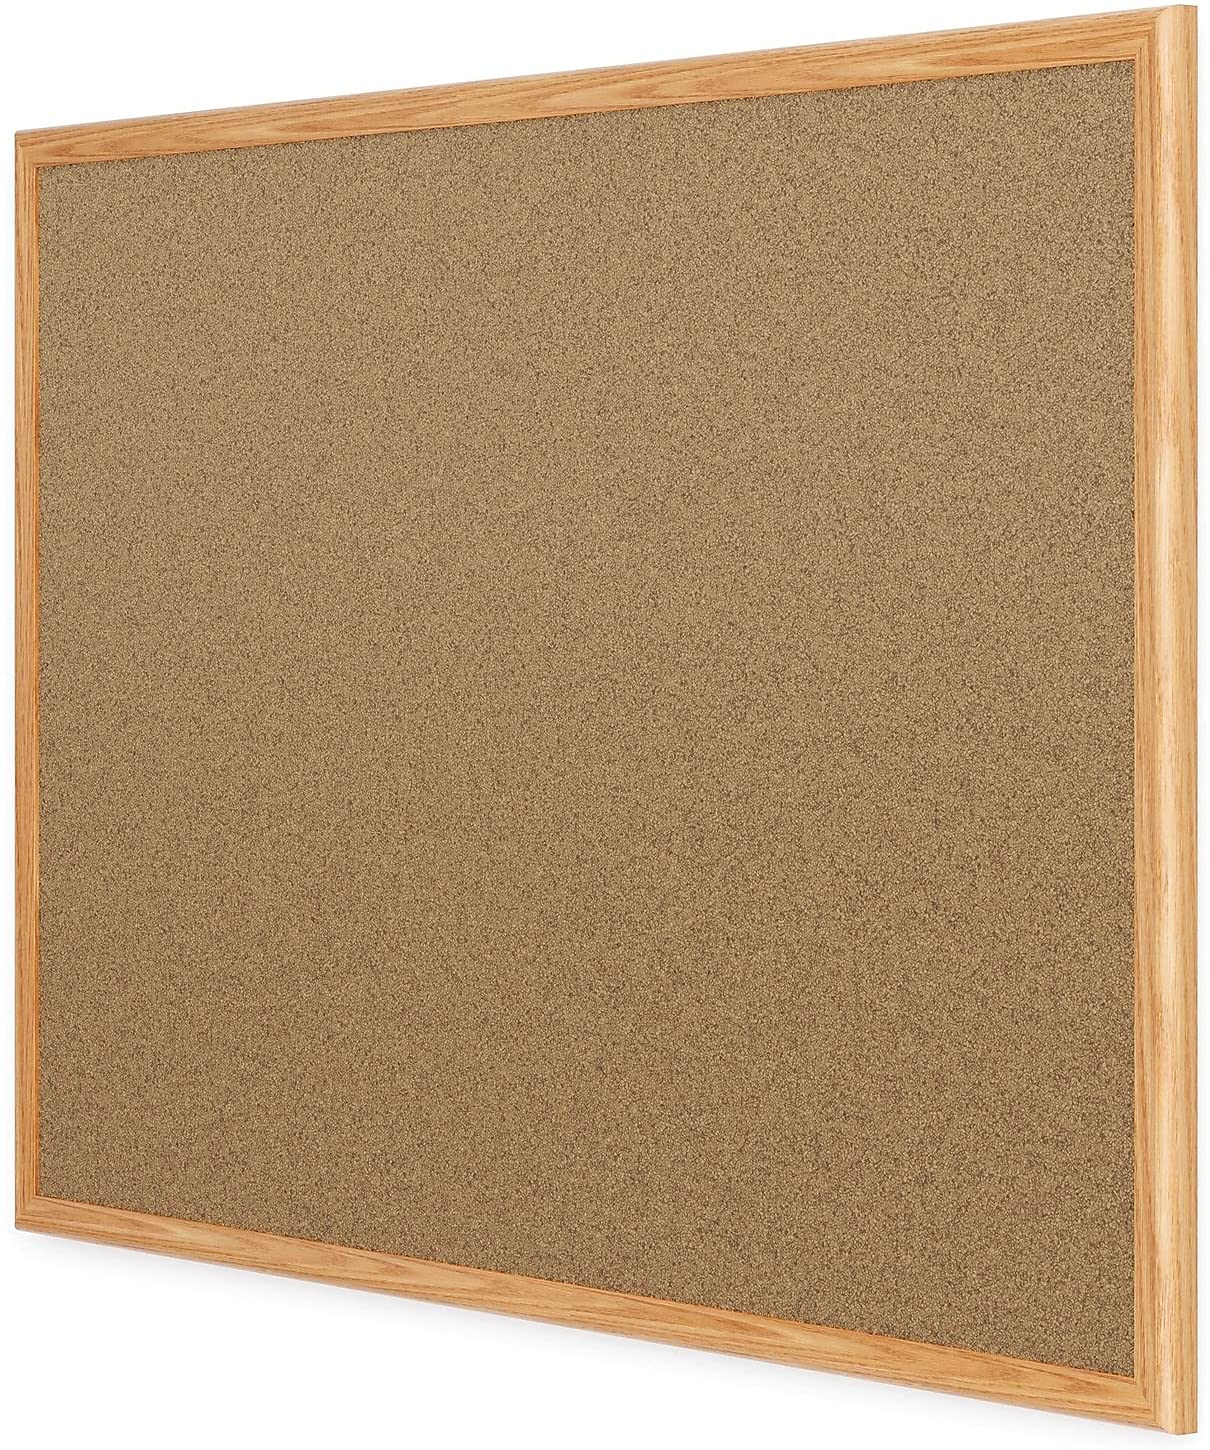 Quartet Cork Bulletin Board, Prestige, 3 x 2 feet, Oak Finish Frame QRT168490